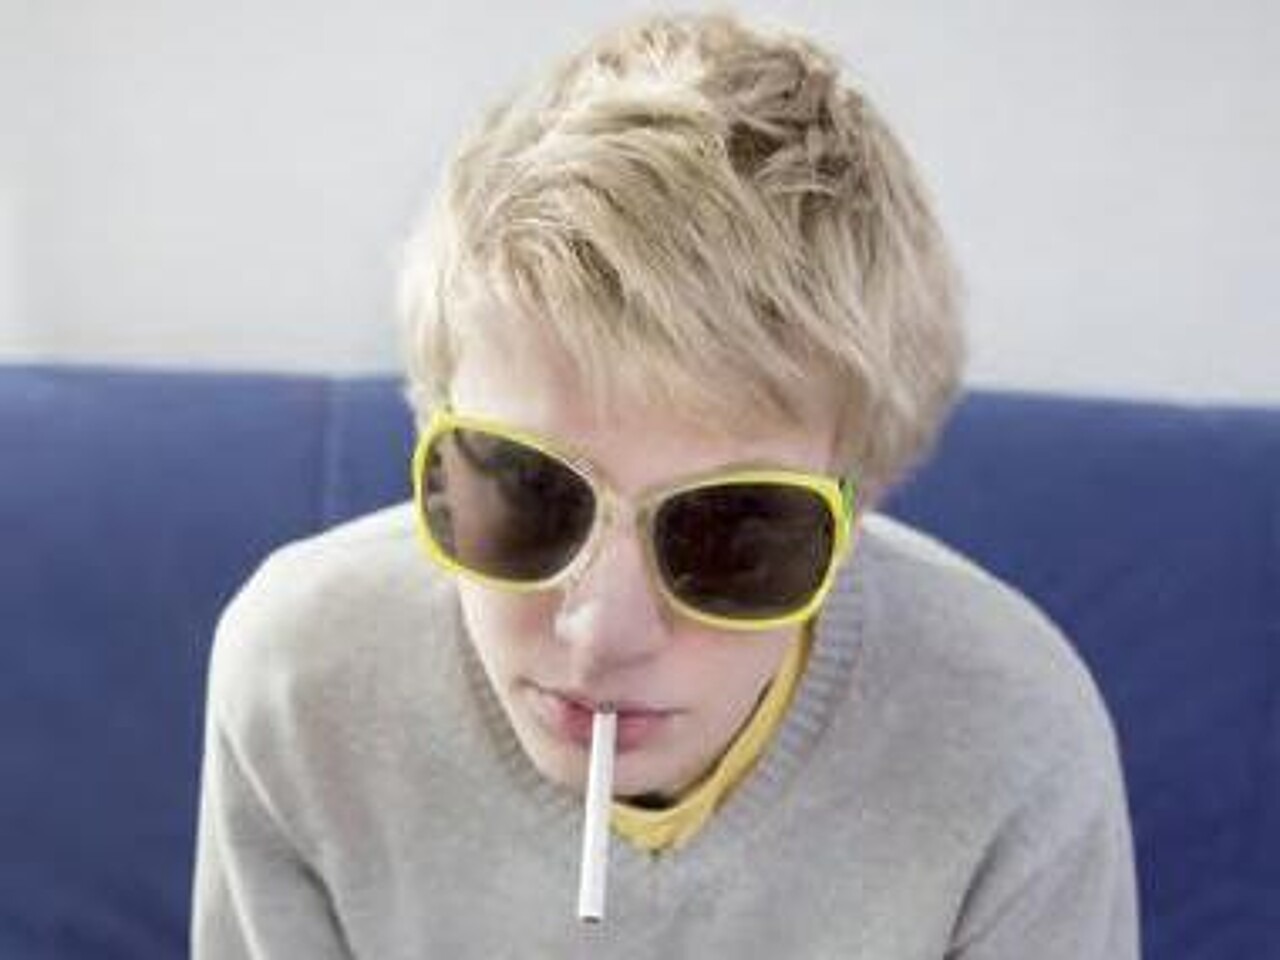 Junge mit gelb umrandeter Sonnenbrille sitzt auf einem Sofa und hat eine Zigarette im Mund